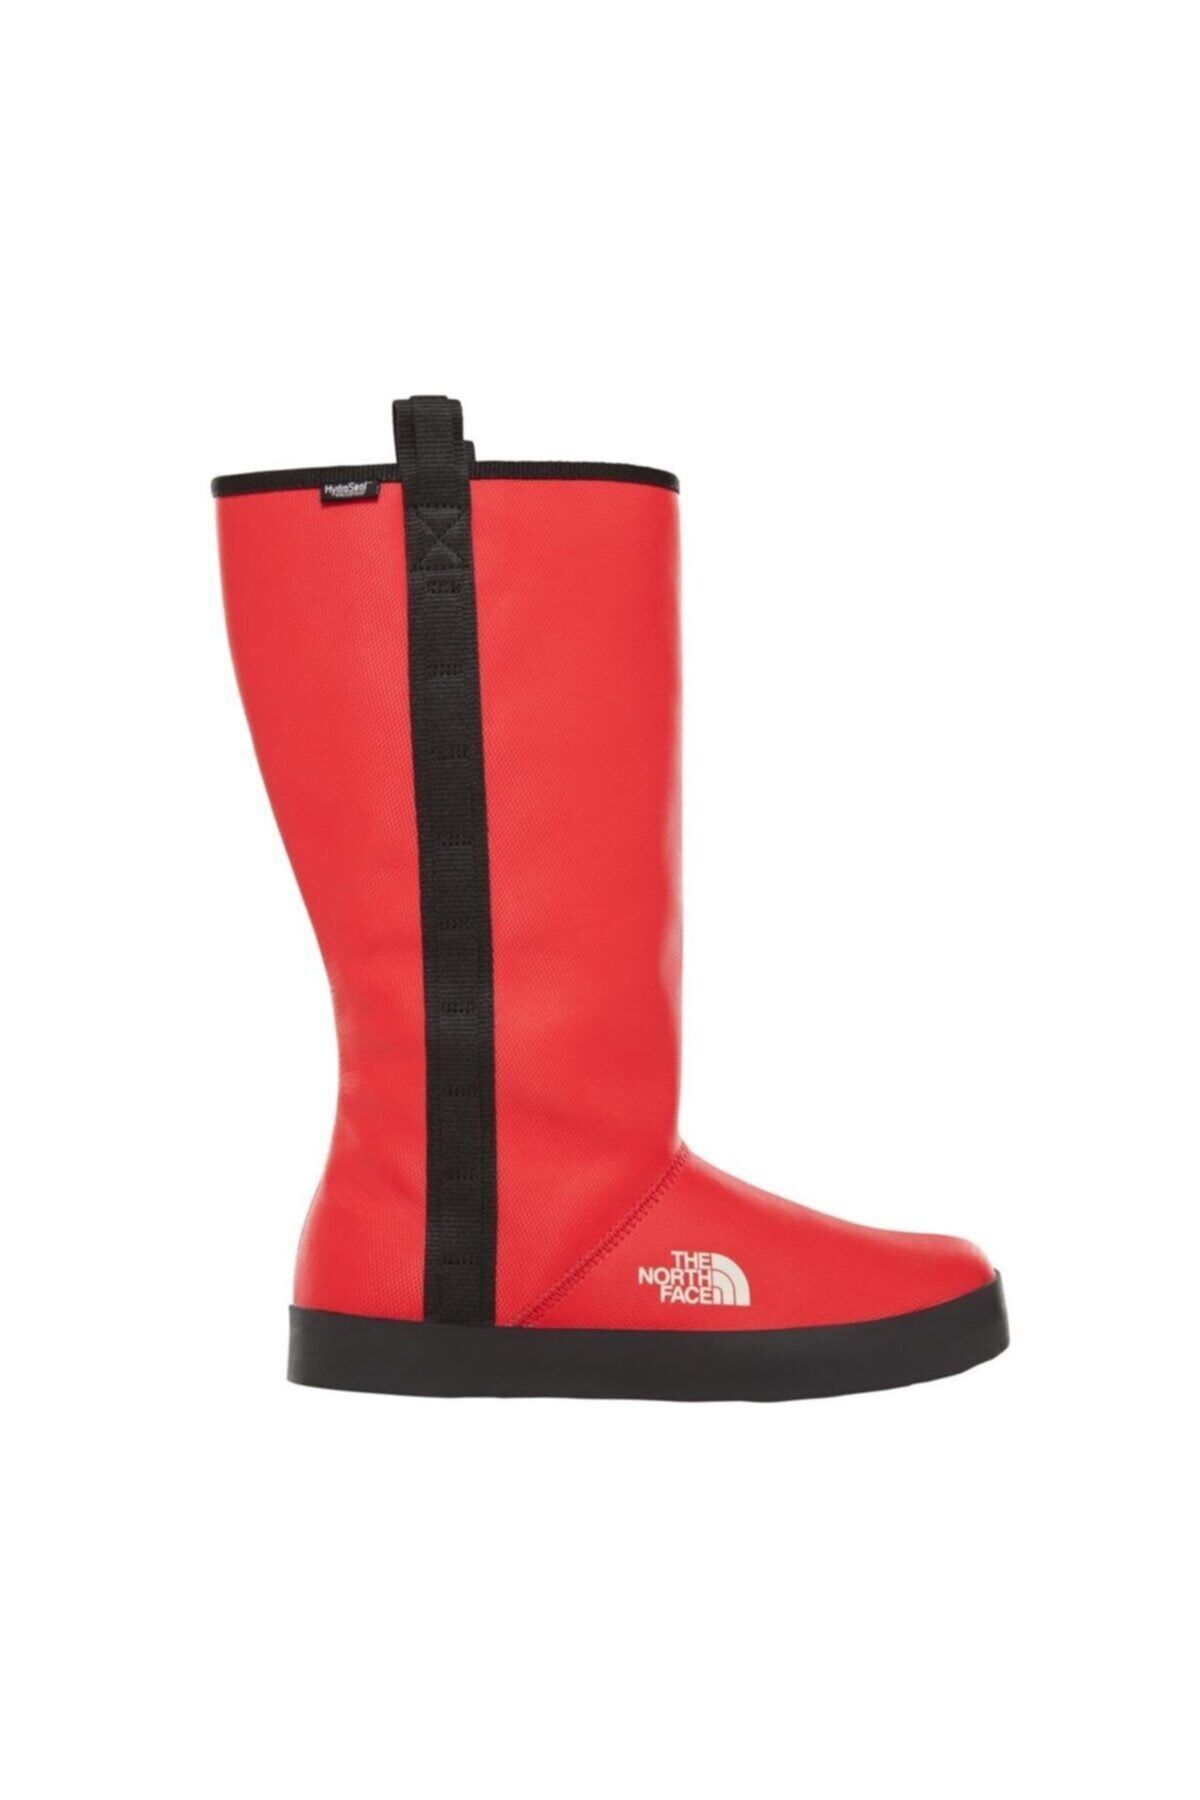 The North Face W Basecamp Rain Boot Kadın Kırmızı Outdoor Ayakkabı Nf0a3k3ckz31